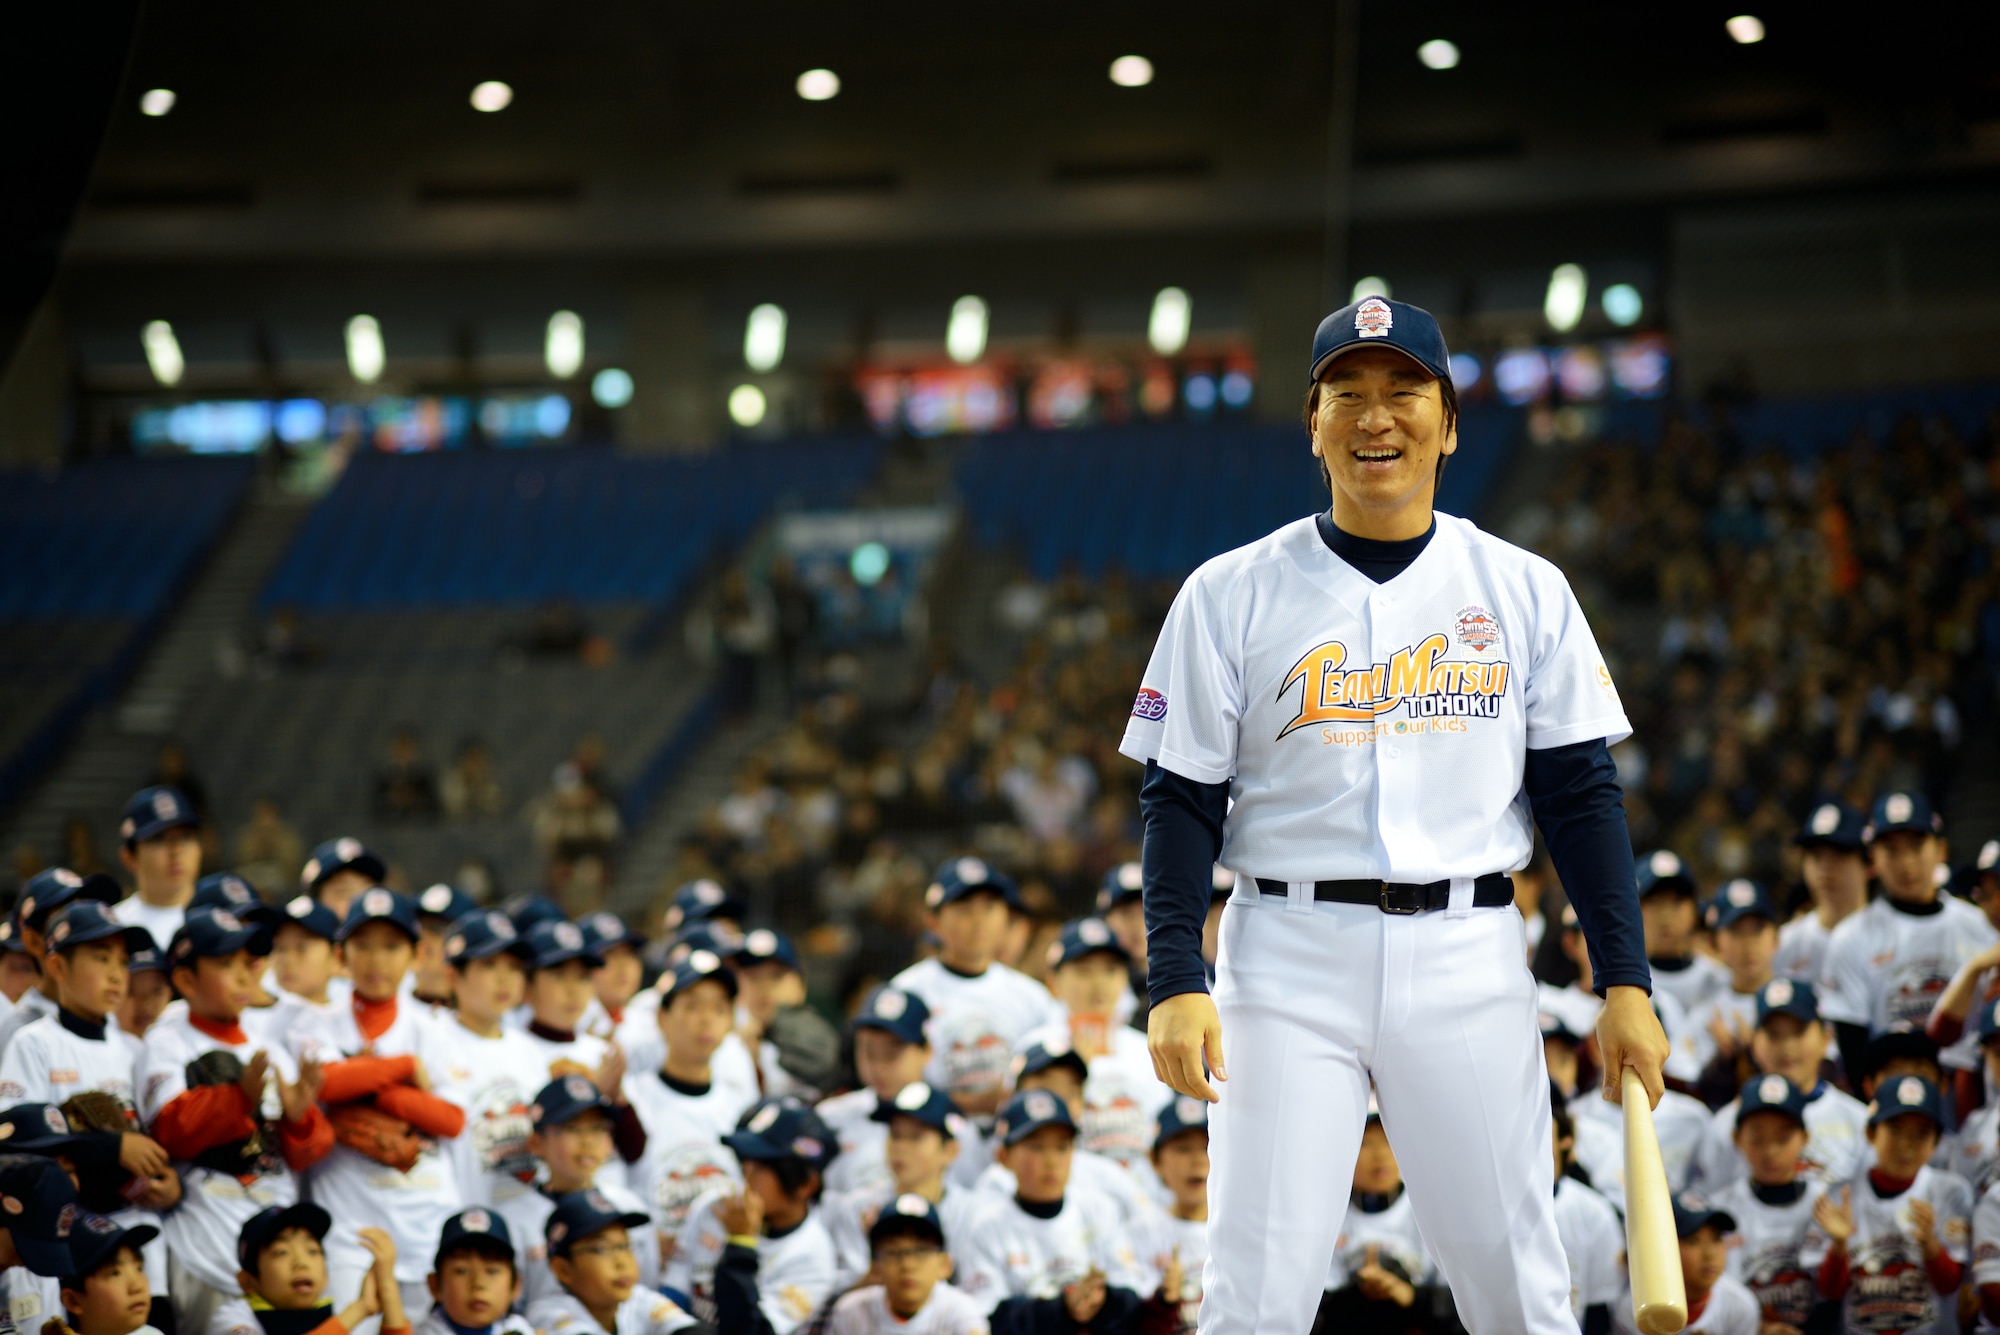 World Series: New York Yankees' Hideki Matsui becomes Japan's